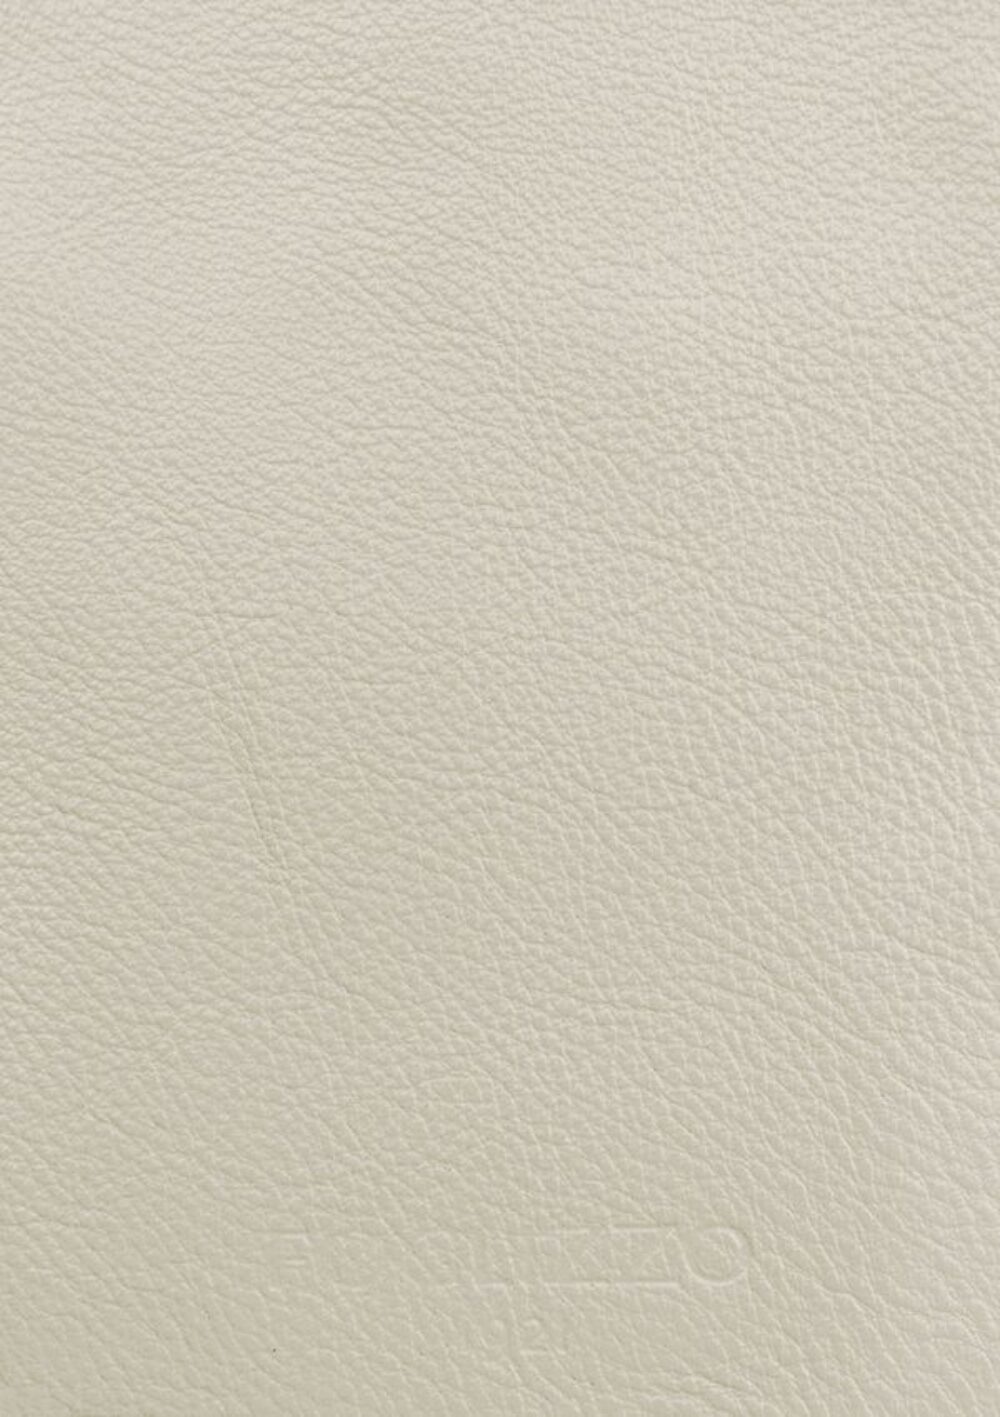 Diseño de lujo y alfombras de alta gama hechas a medida • Light Cream White Jade